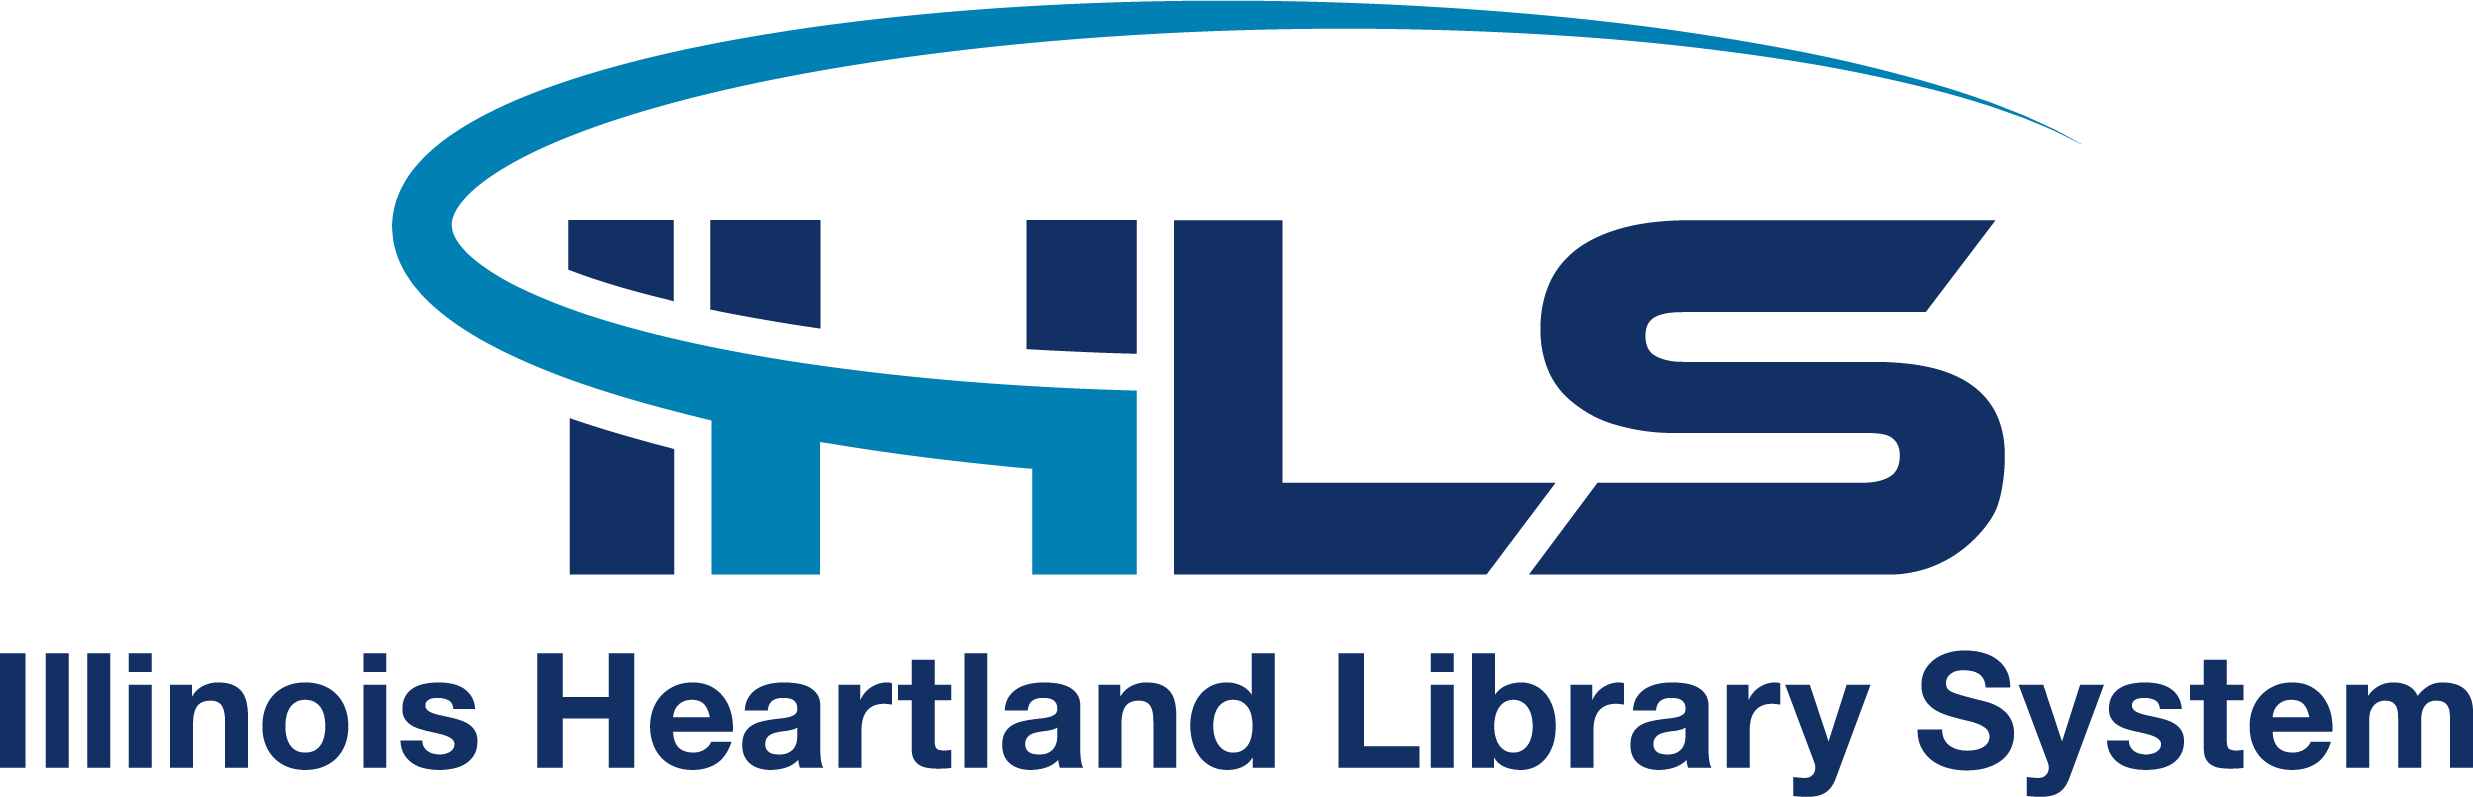 Illinois Heartland Library System Company Logo